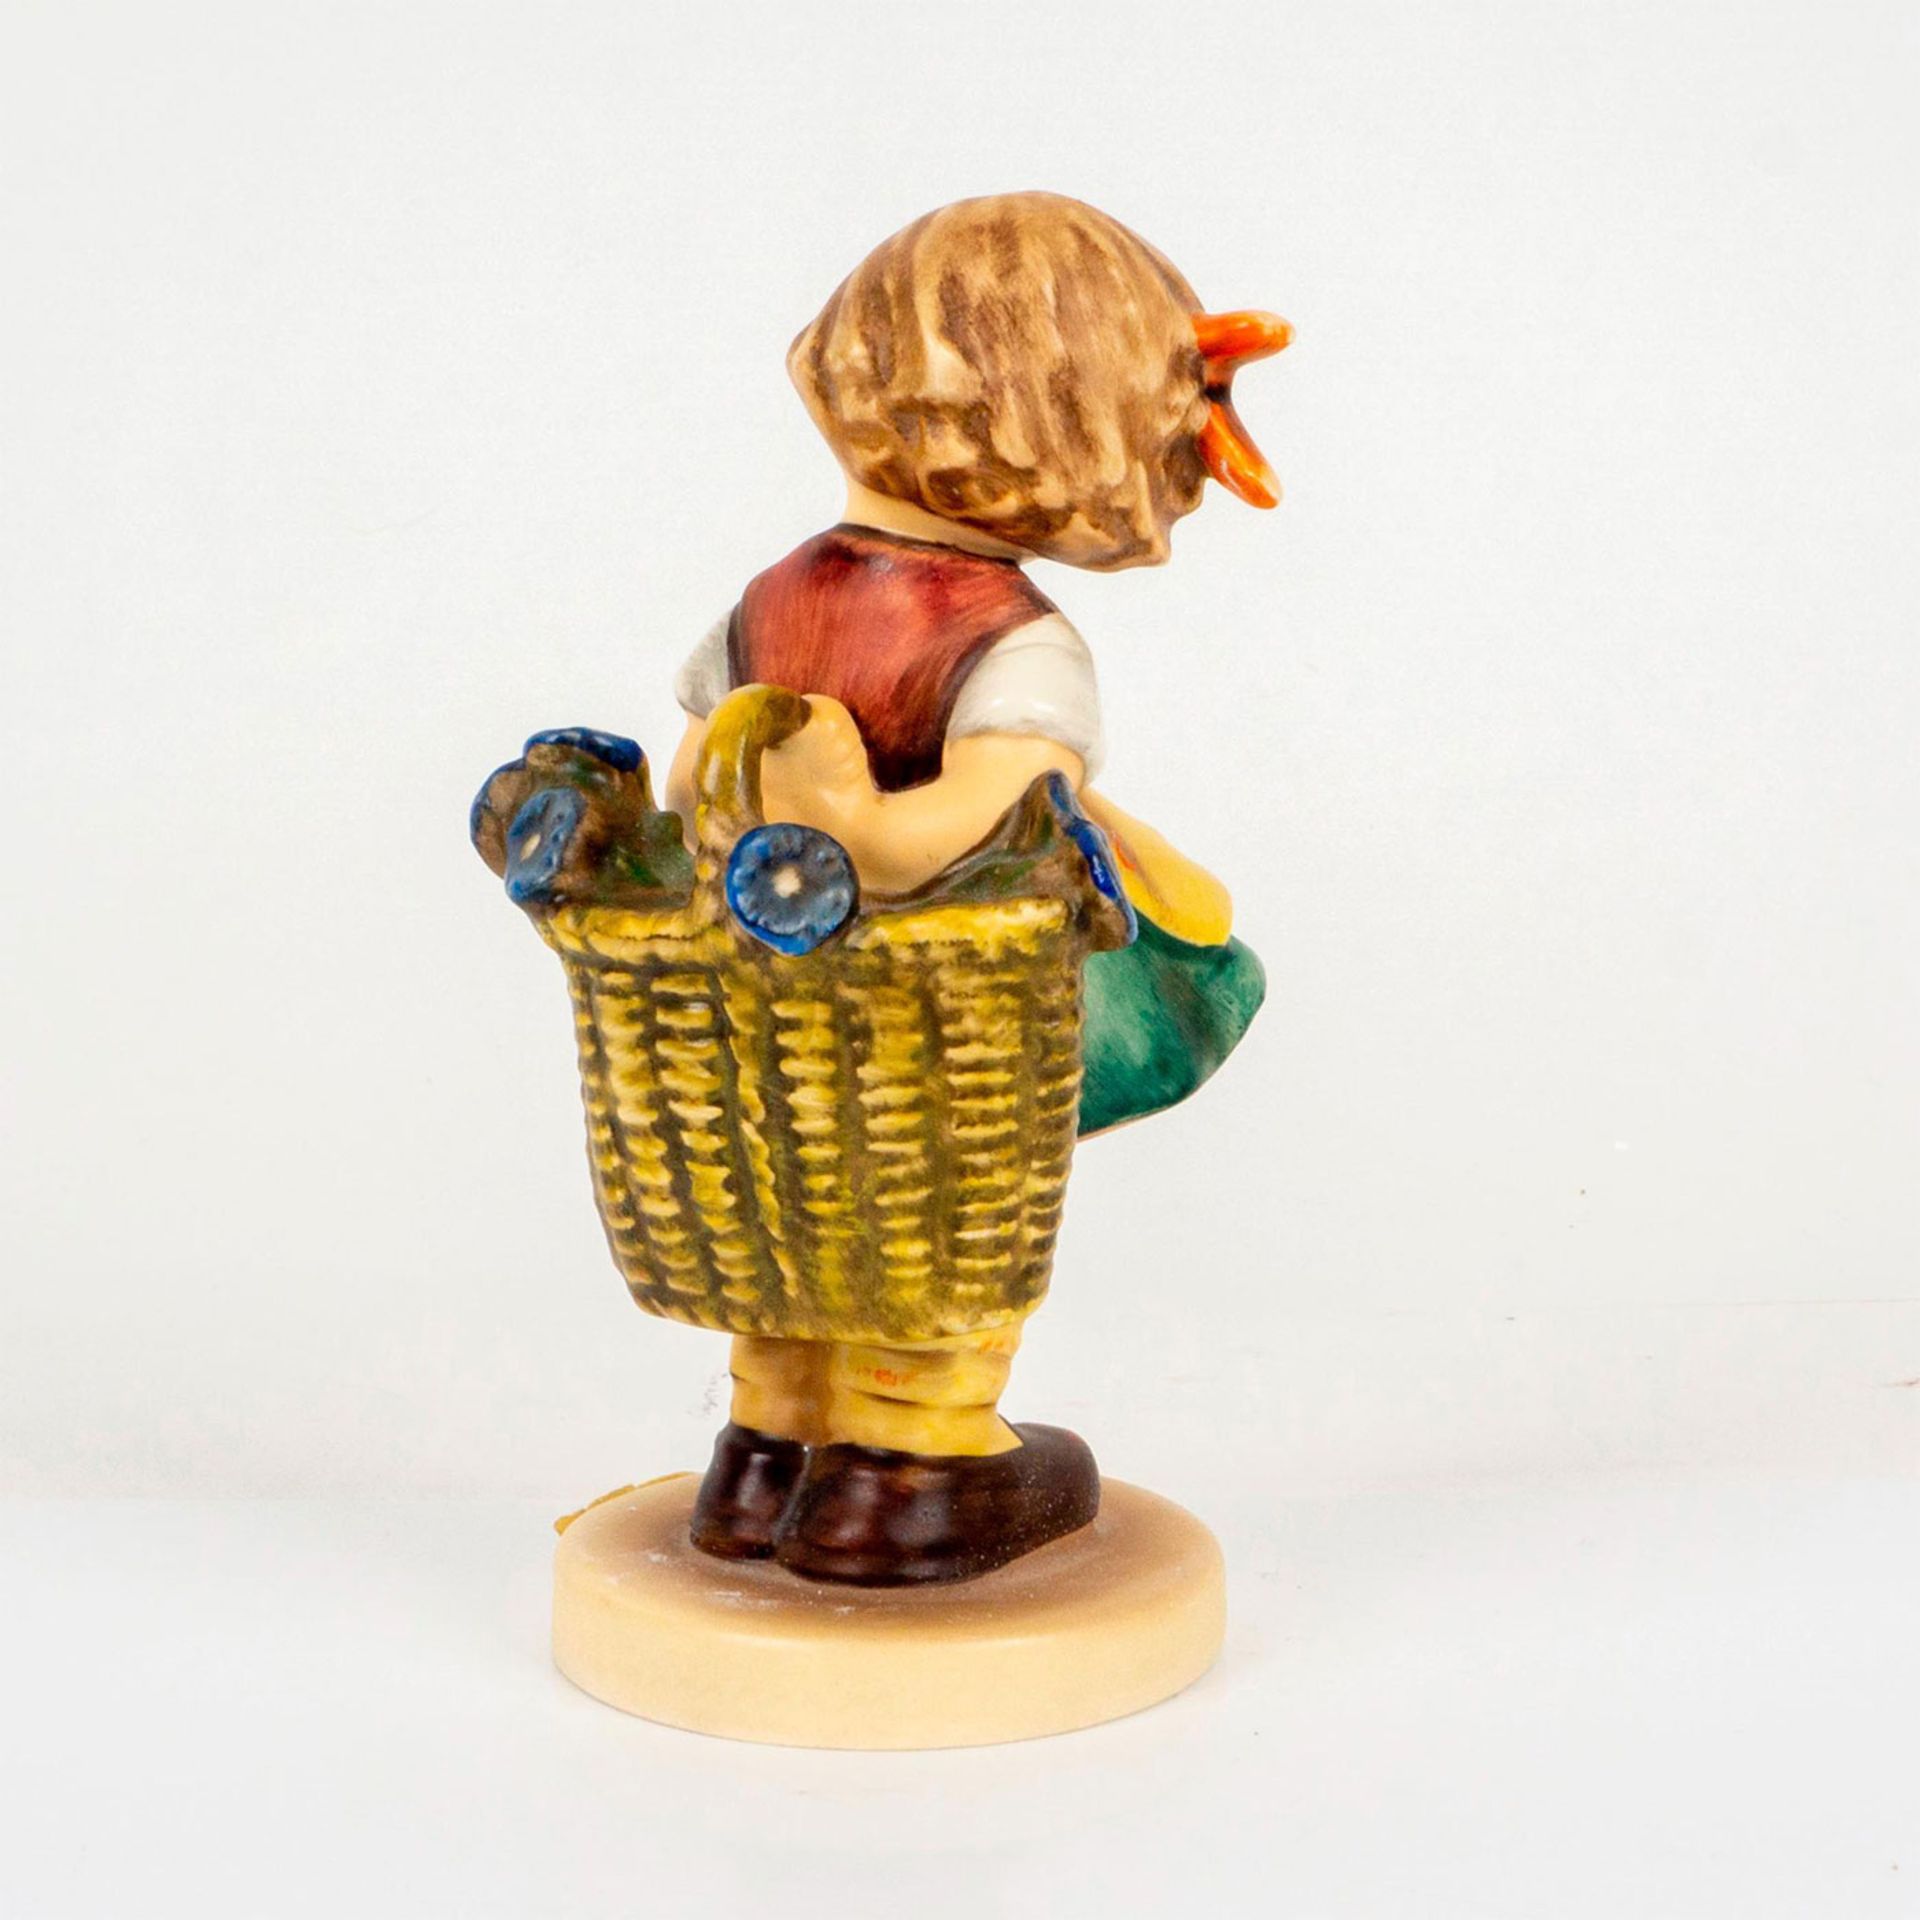 Goebel Hummel Figurine, Bashful - Image 2 of 3